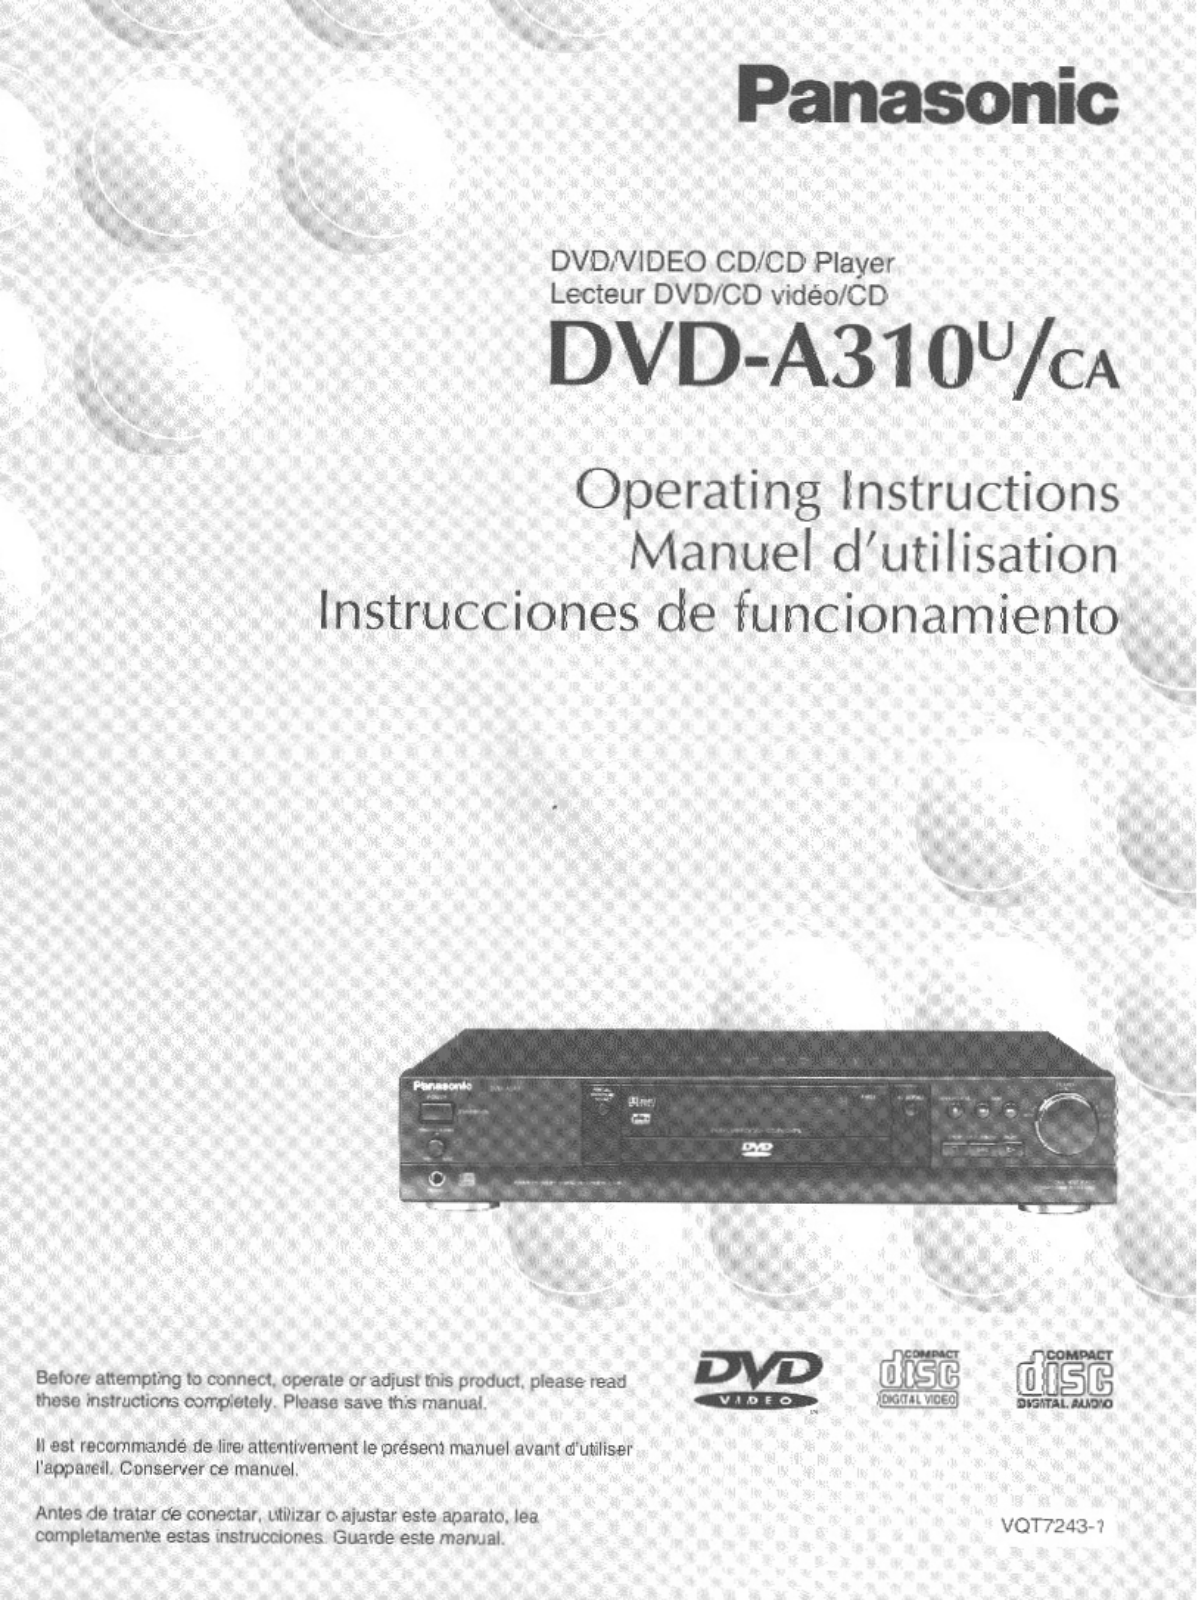 Panasonic DVD-A310U Operating Instruction